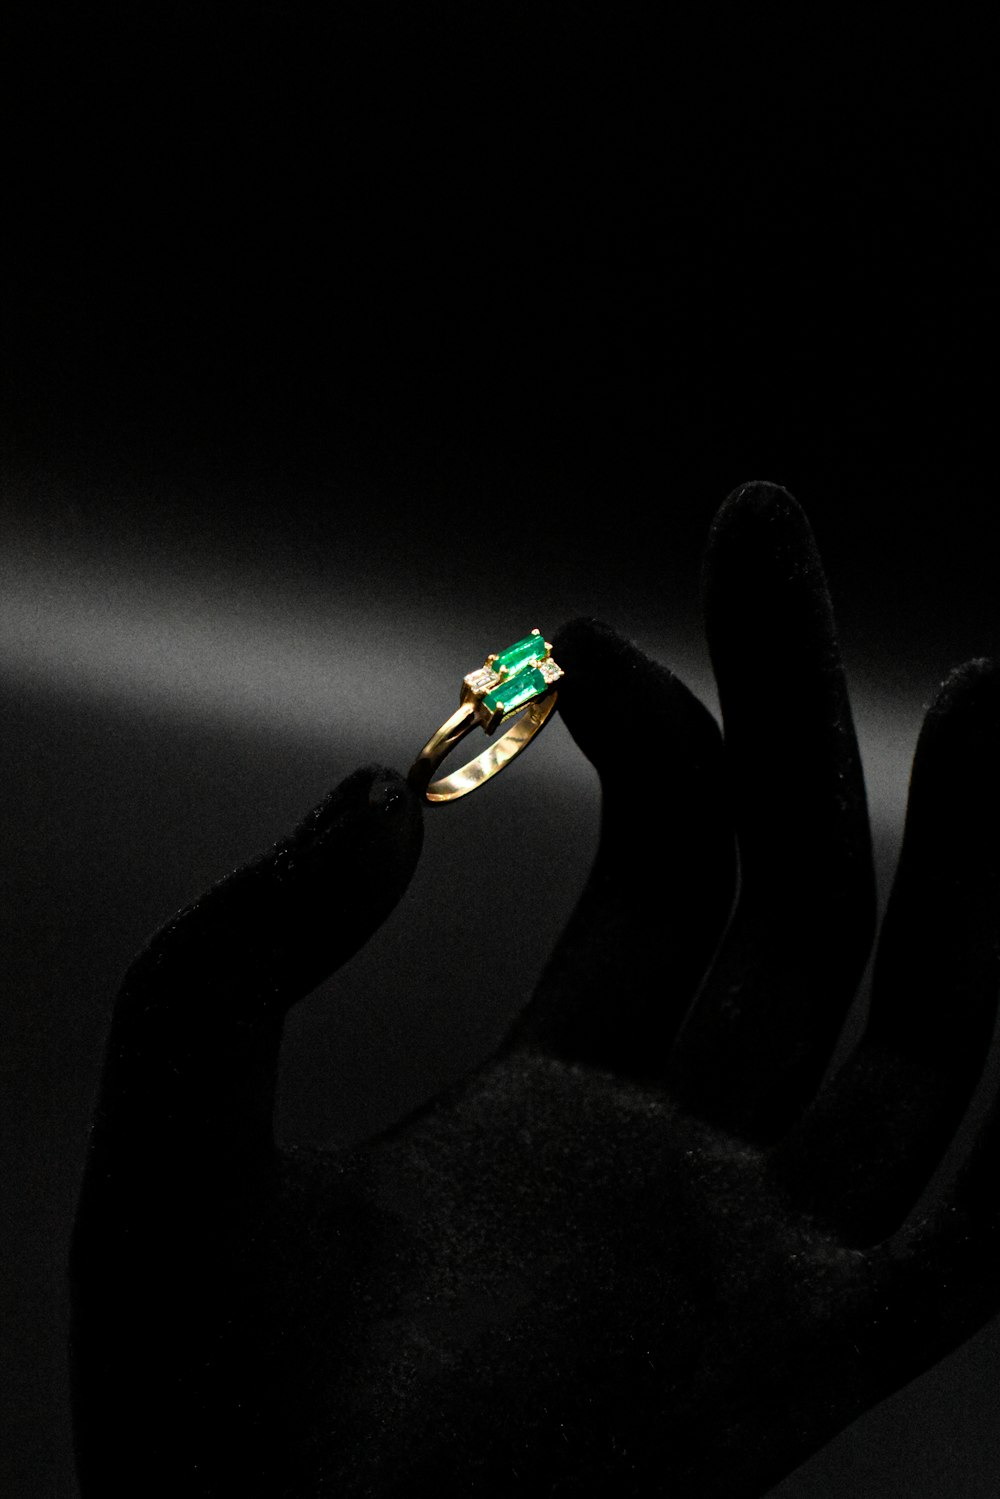 Die Hand einer Person, die einen Ring mit einem grünen Stein hält